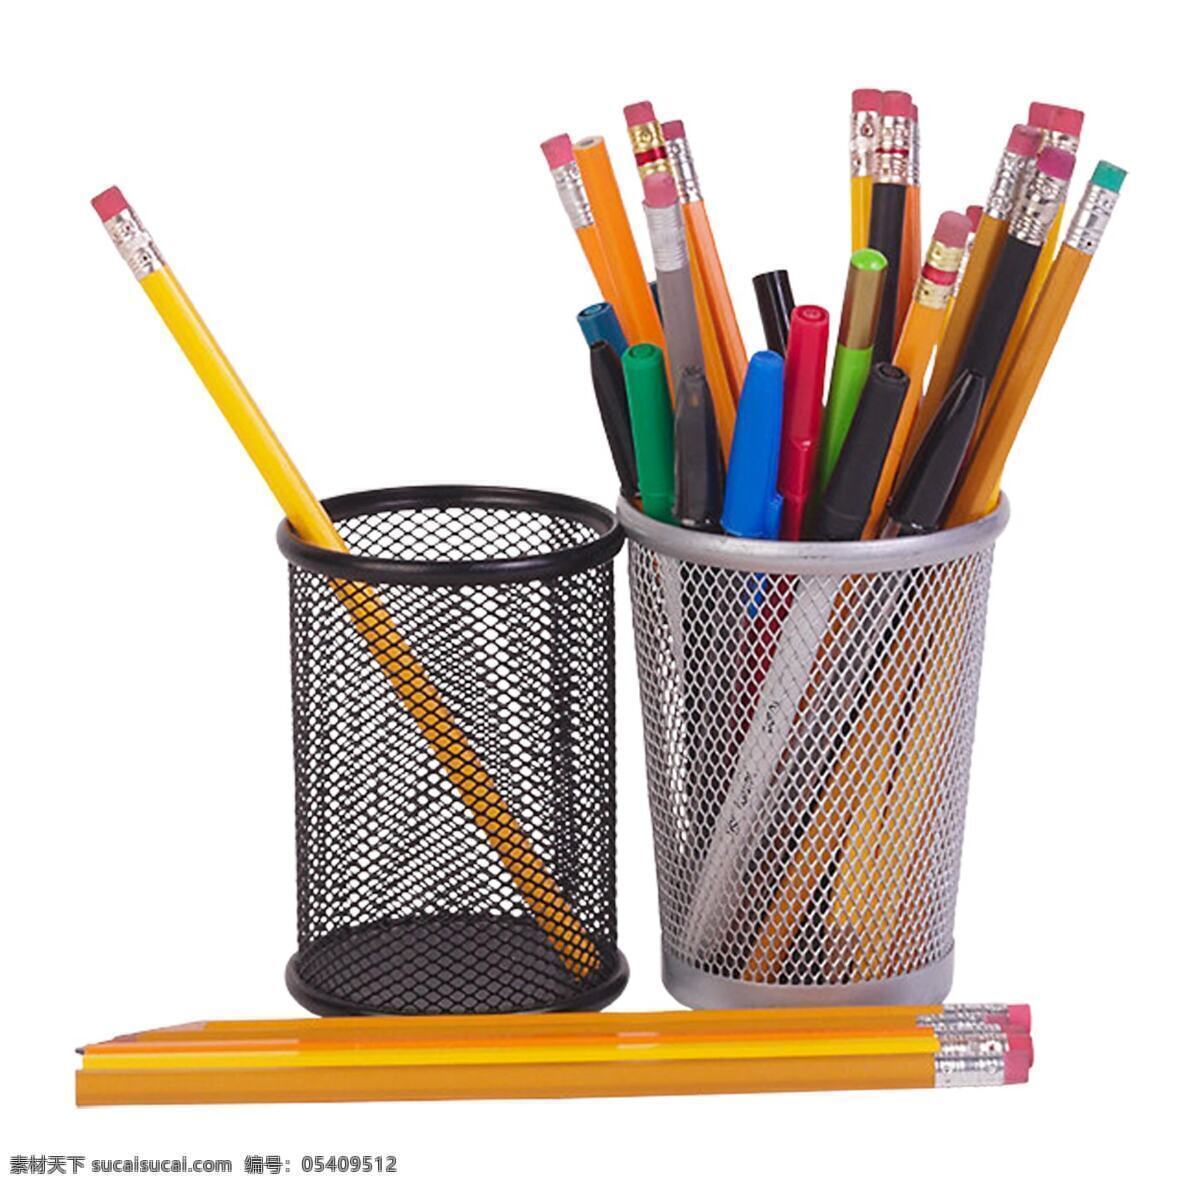 笔筒 铅笔 笔 绘画笔 彩色铅笔 文具 学习用品 办公学习 生活百科